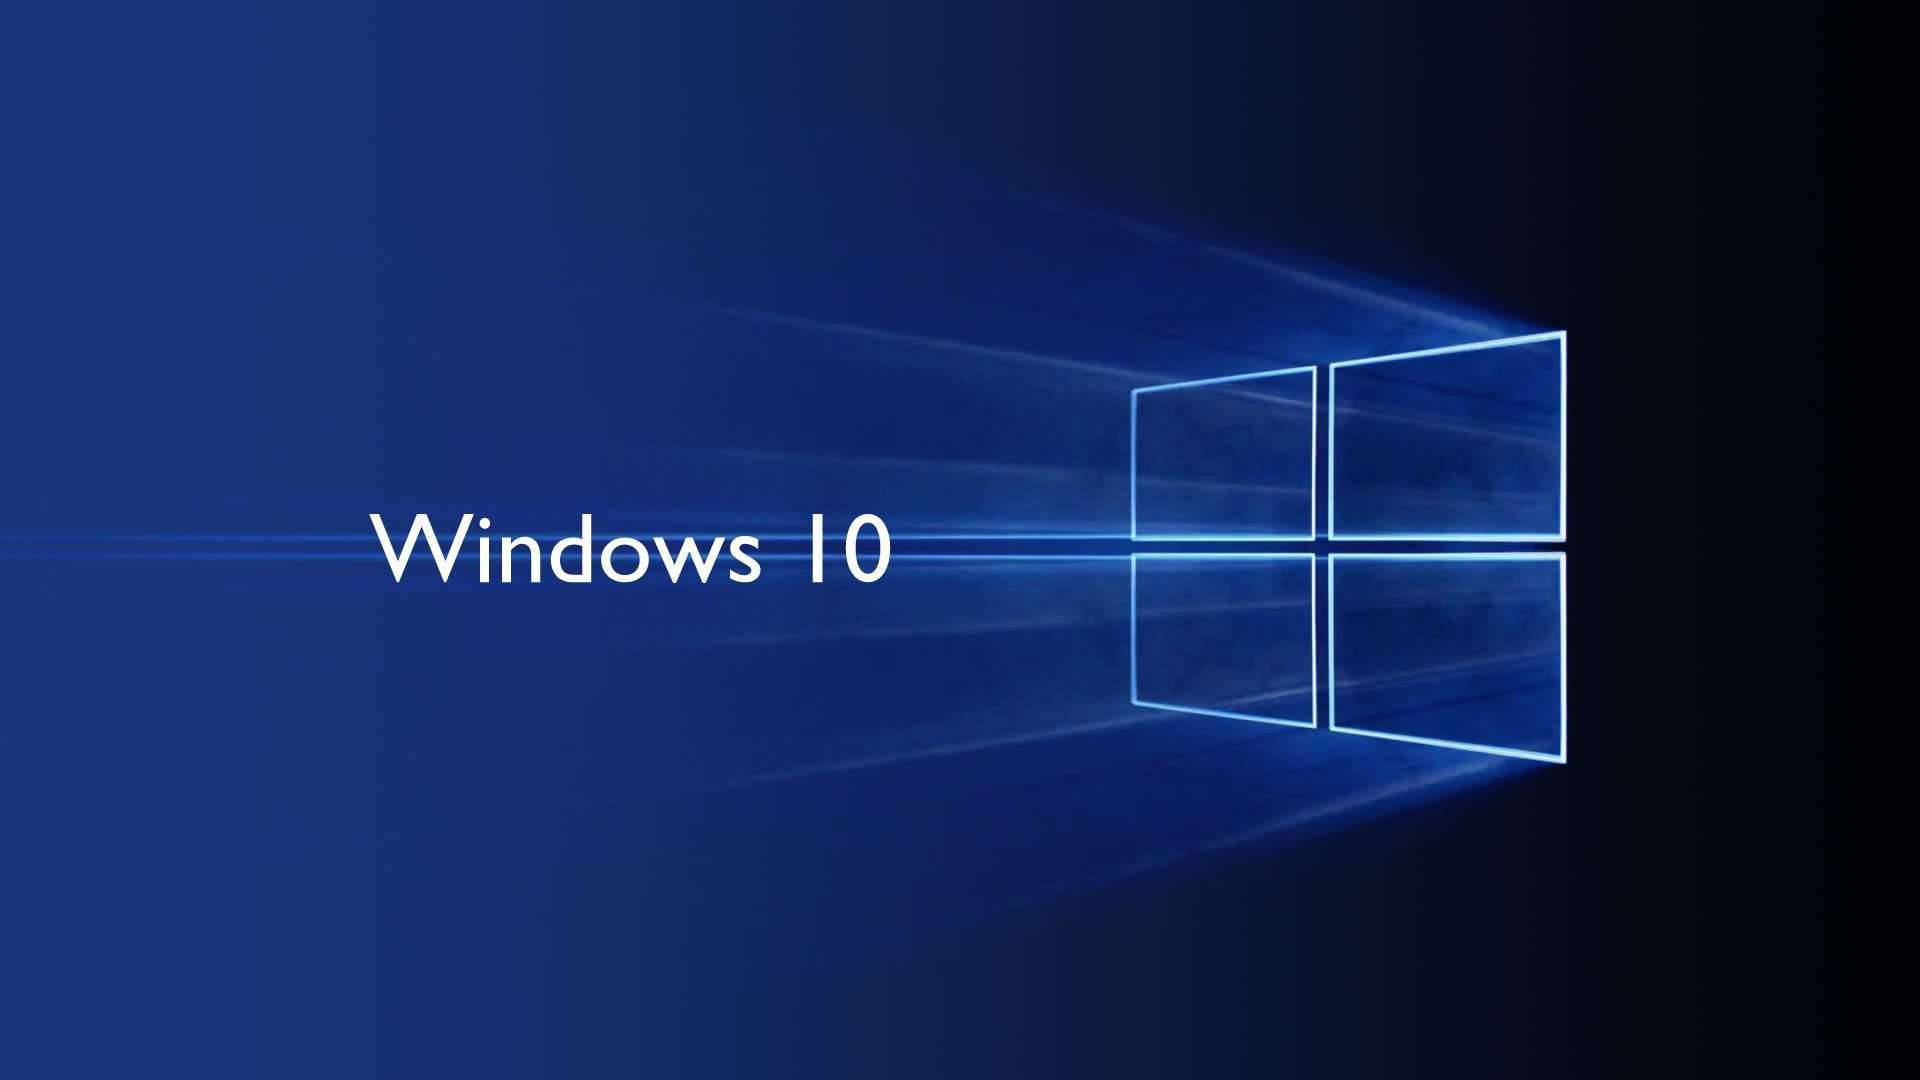 Windows 10 Hd Dark Gradient Background